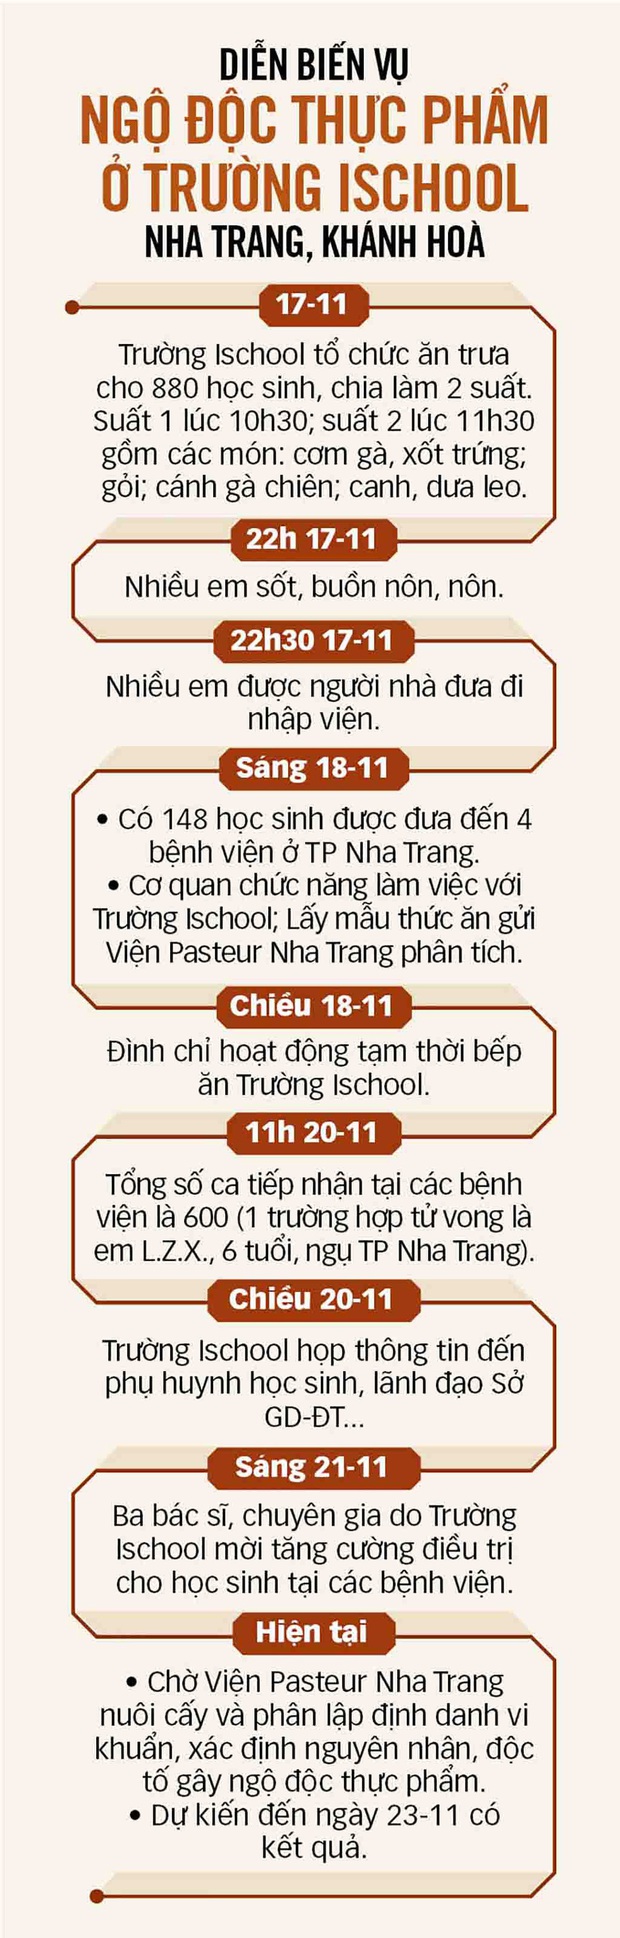 Vụ học sinh ngộ độc tập thể ở Nha Trang: Dự kiến ngày mai 23-11 có kết quả phân tích mẫu thức ăn - Ảnh 2.